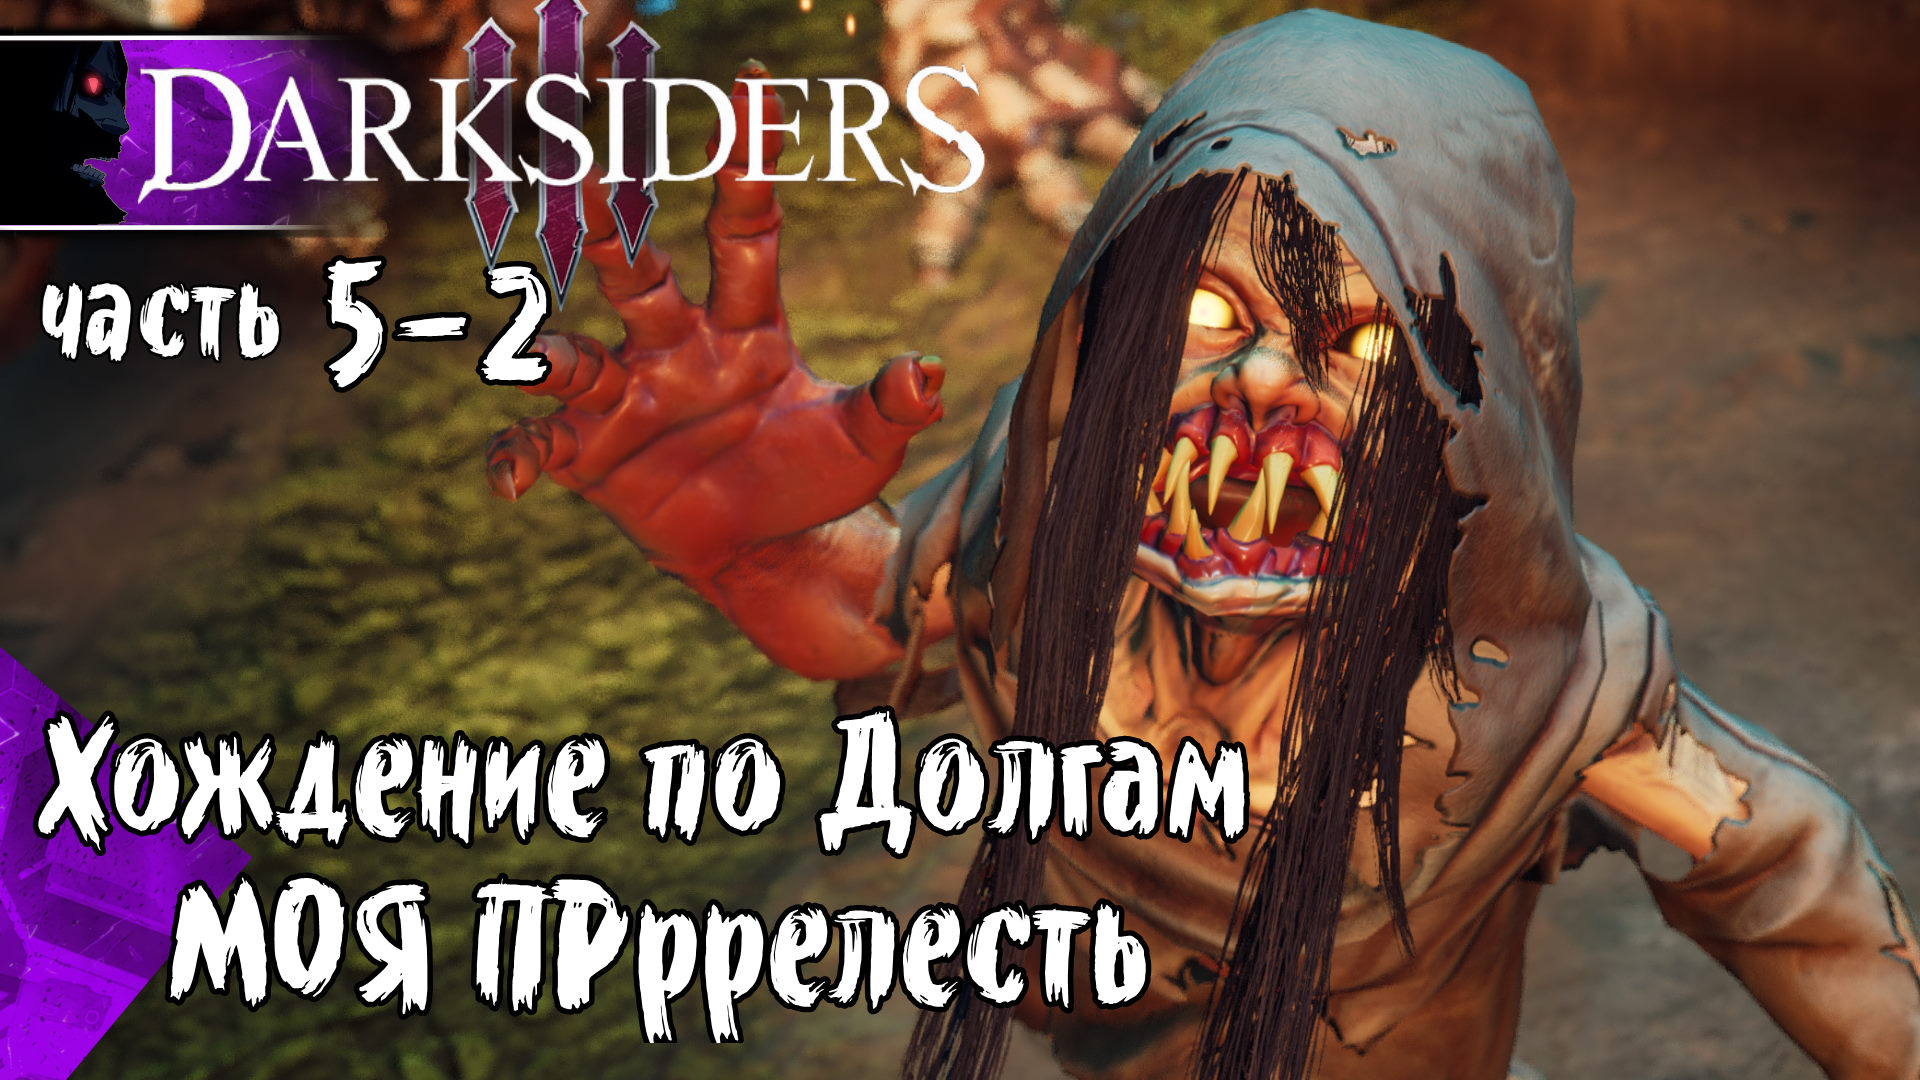 Darksiders 3 (Закрываем Пропущенное, Головоломки) #5-2 Прохождение на Русском - Обзор - геймплей